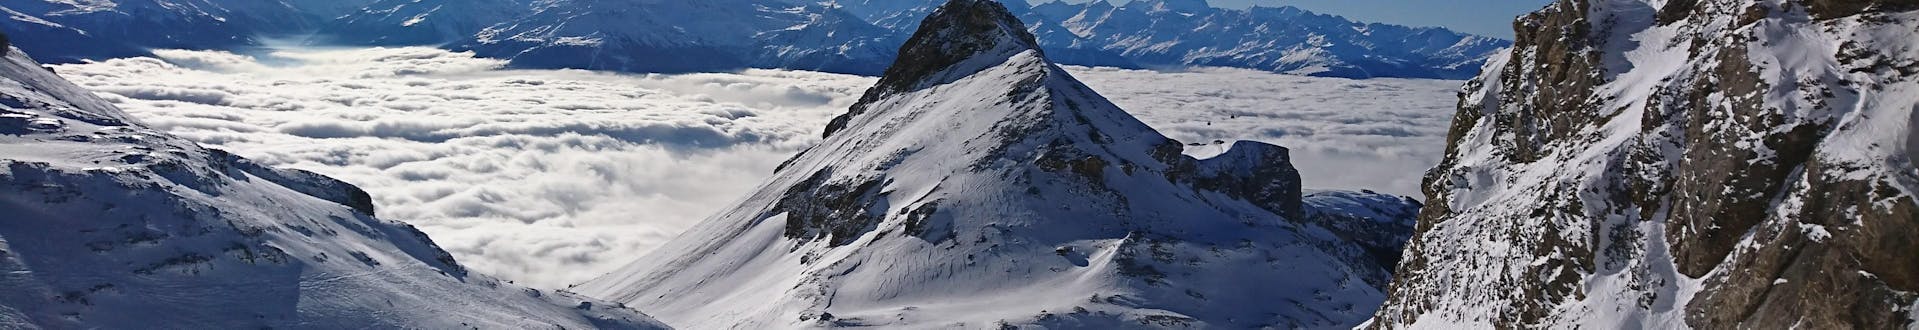 Blick auf die alpine Landschaft und die Pisten von Crans-Montana, wo die örtlichen Skischulen ihre Skikurse anbieten.